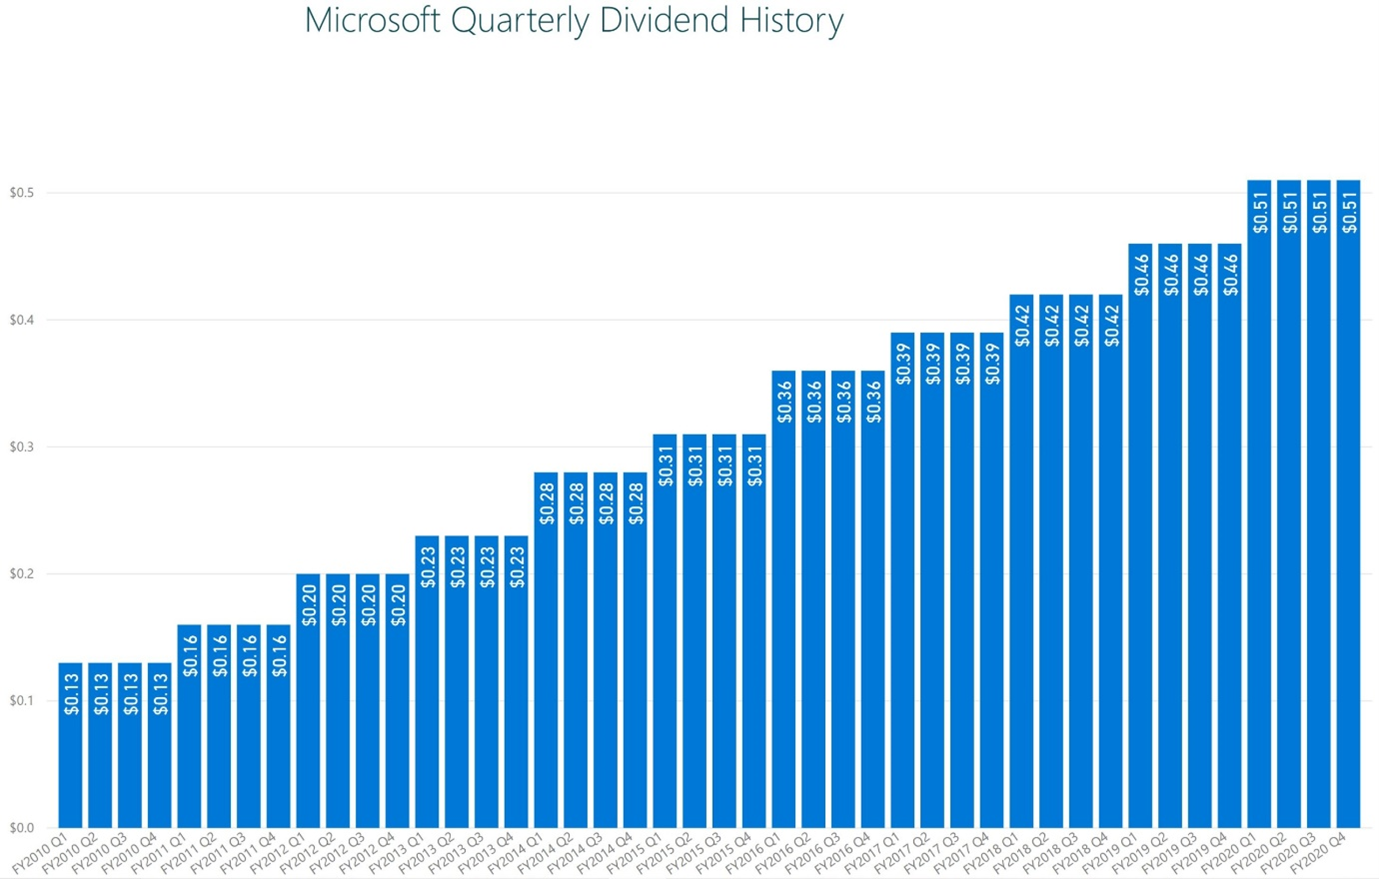 Microsoft augmente régulièrement son dividende depuis 2010